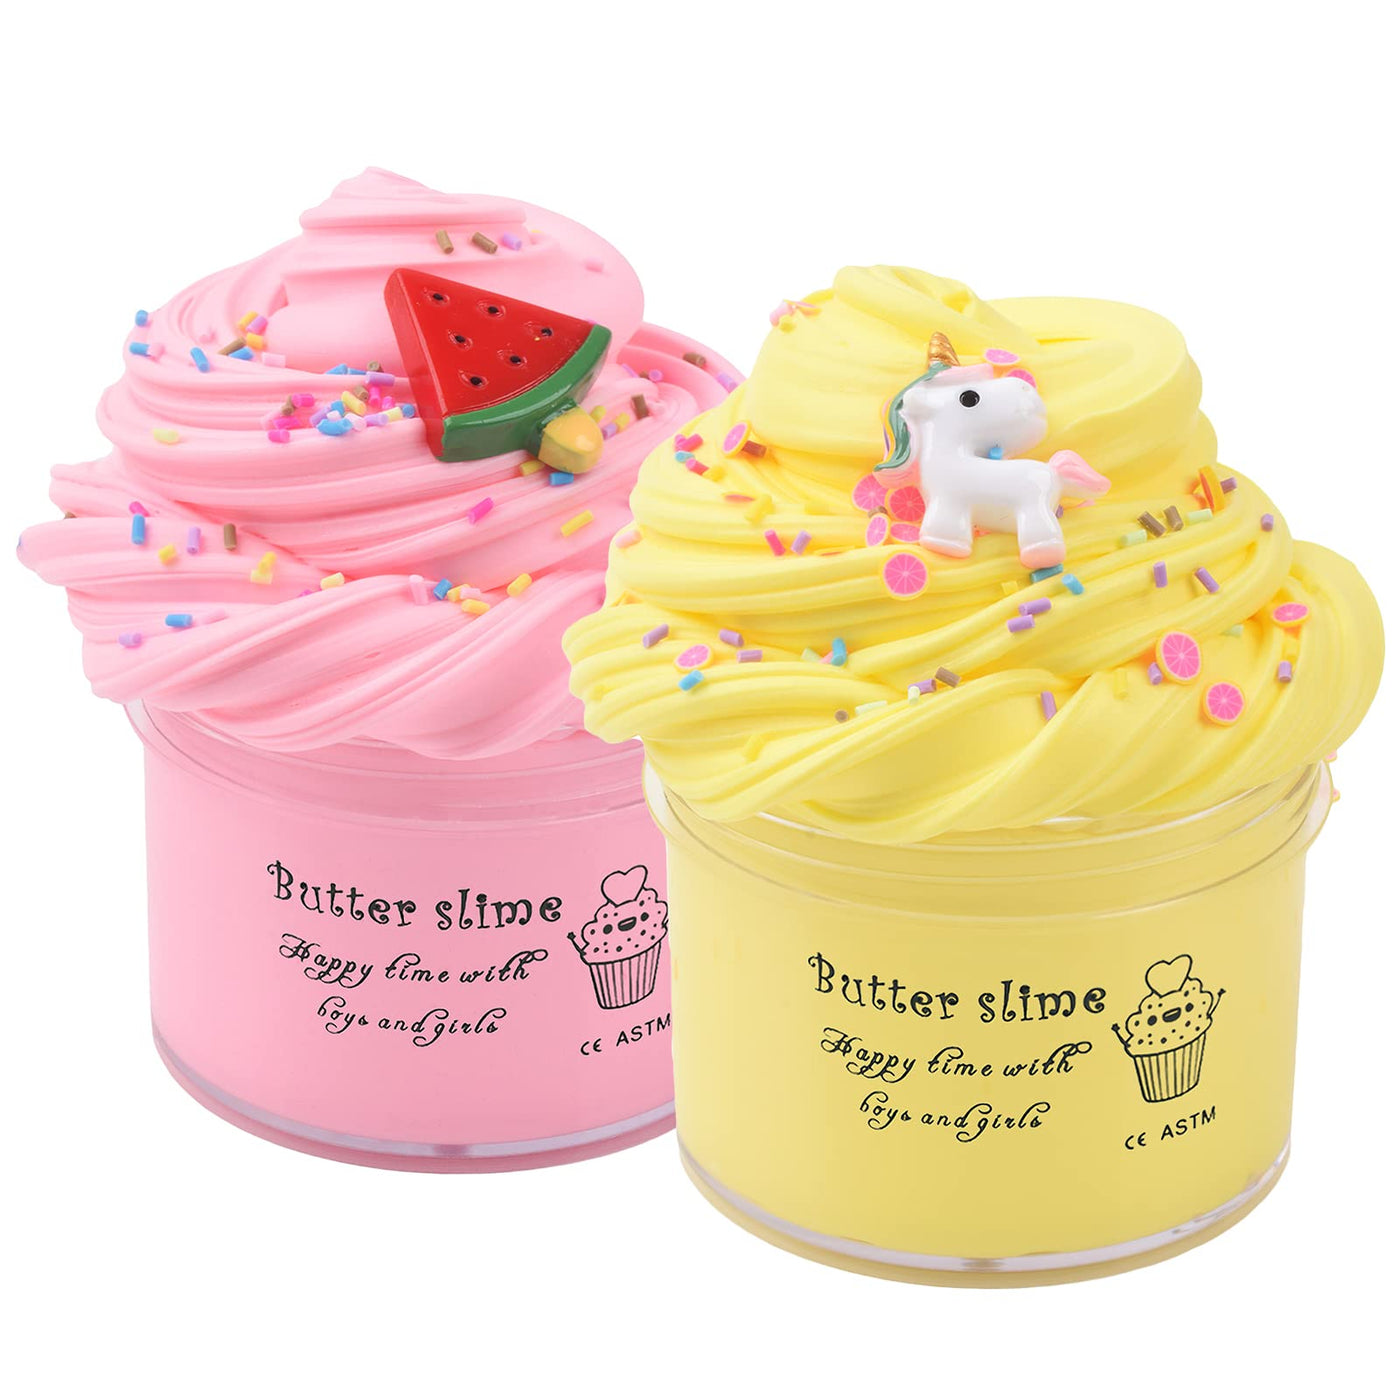 Fluffy Slime Making Ice Cream Kit Gift Toys Butter Slime Kit for